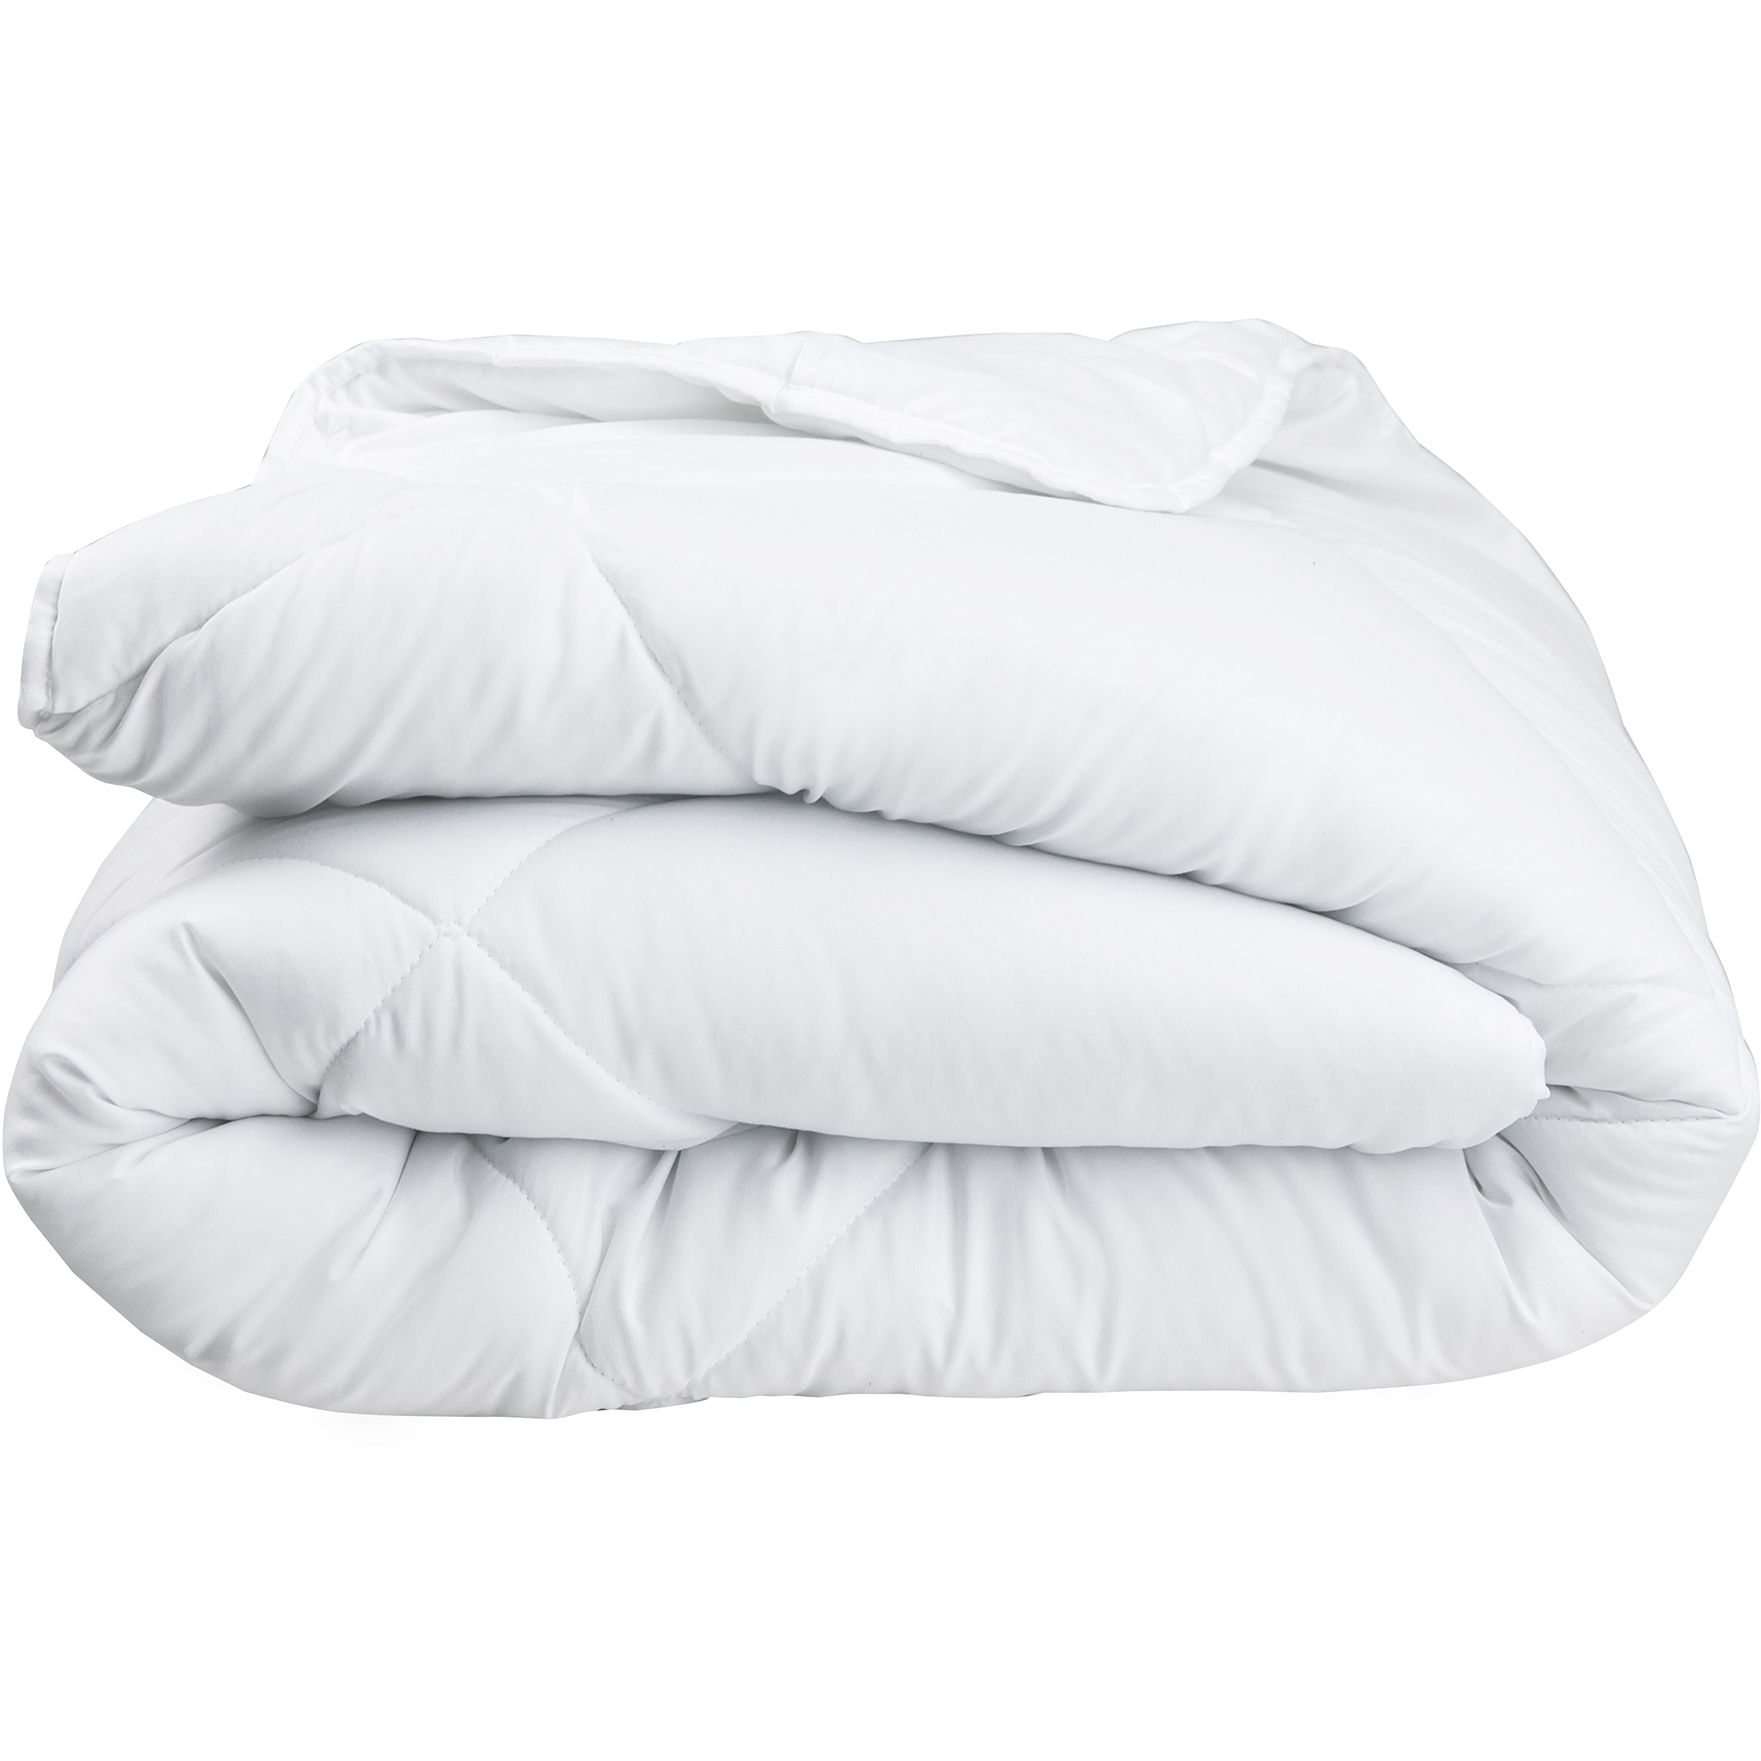 Одеяло ТЕП White Comfort 140x205 белое (1-02556_00000) - фото 1